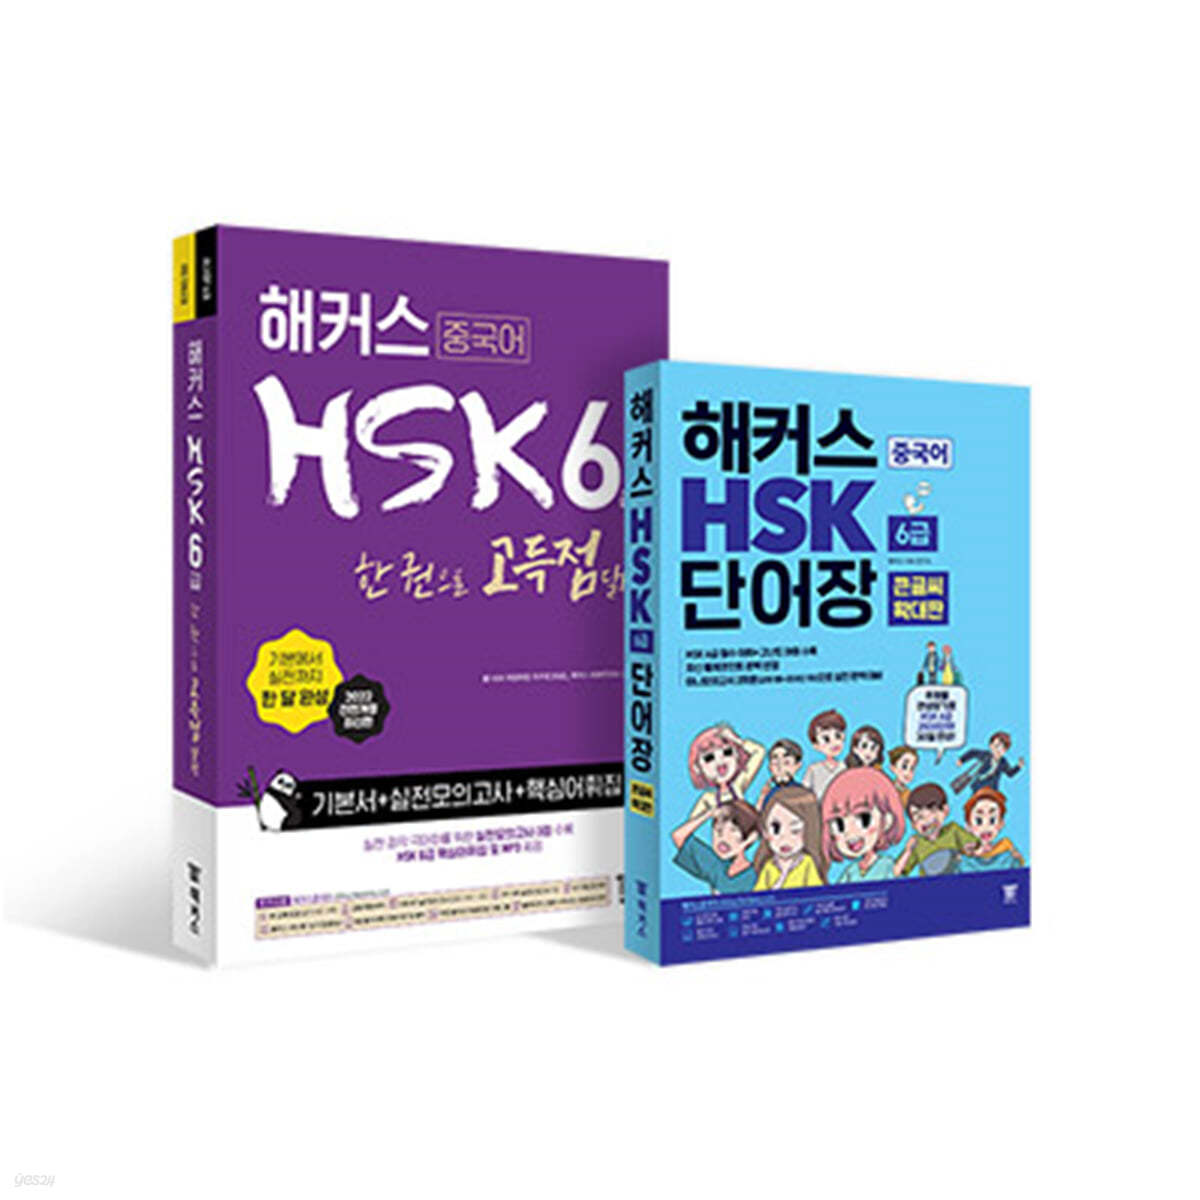 해커스 중국어 HSK 6급 어휘·단어장 큰글씨 버전+종합서 세트